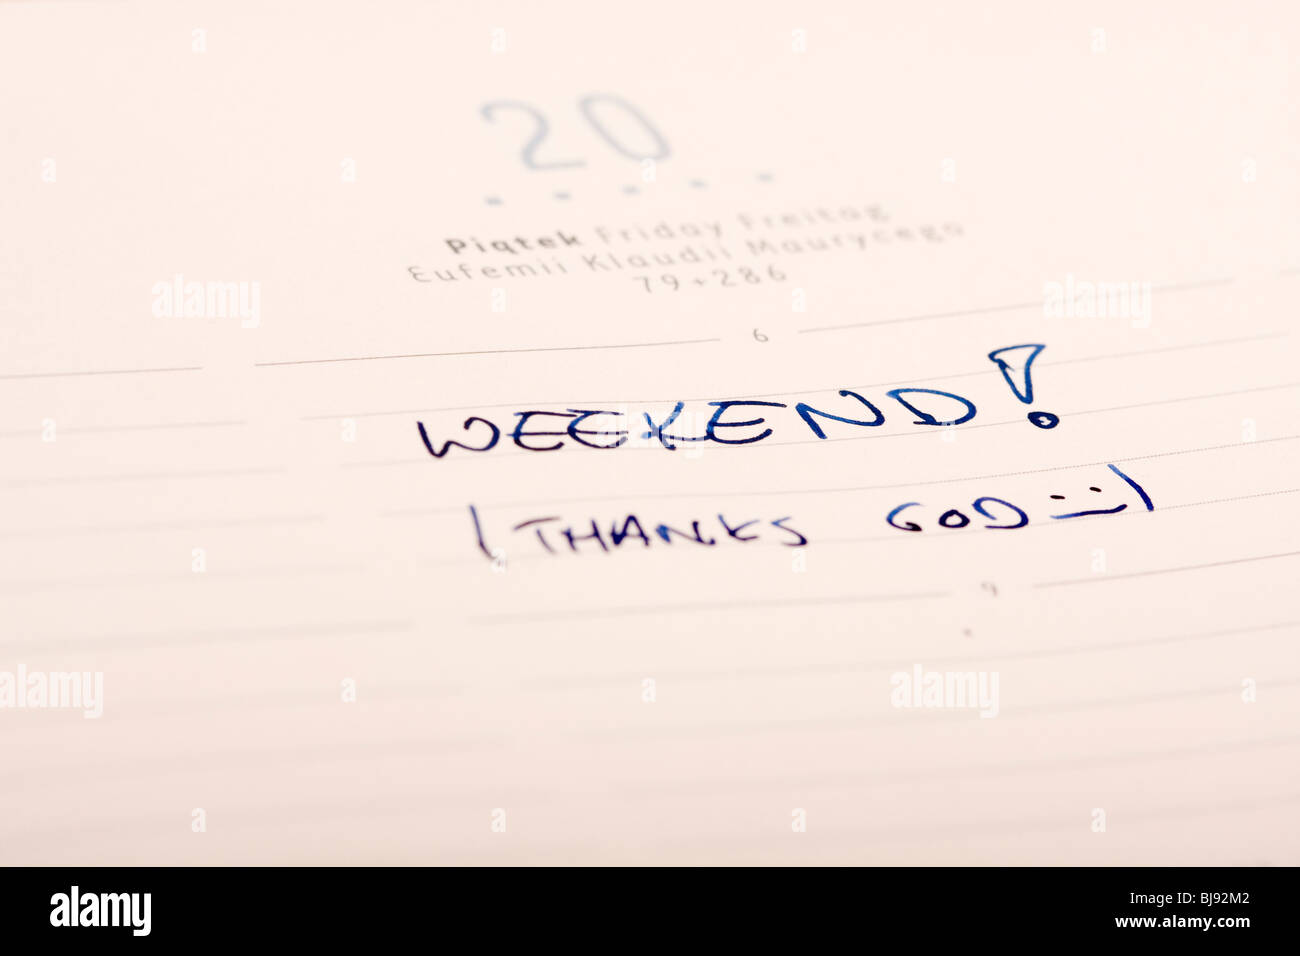 Weekend - word written i calendar Stock Photo